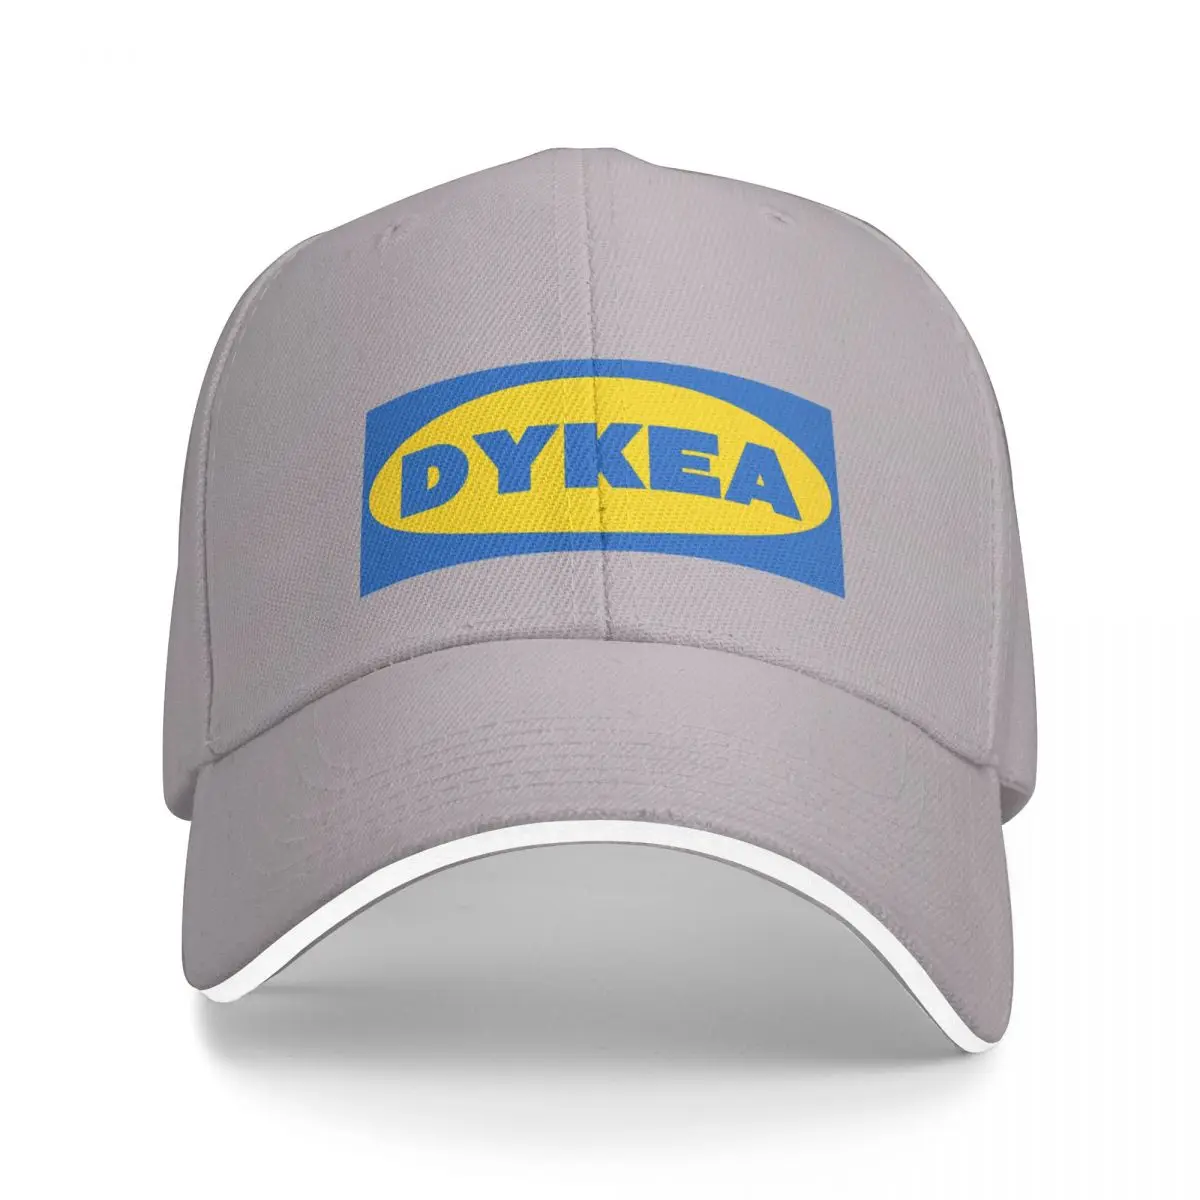 Dykea Cap Бейсболка для гольфа мужская роскошная кепка мужские зимние шапки Женские